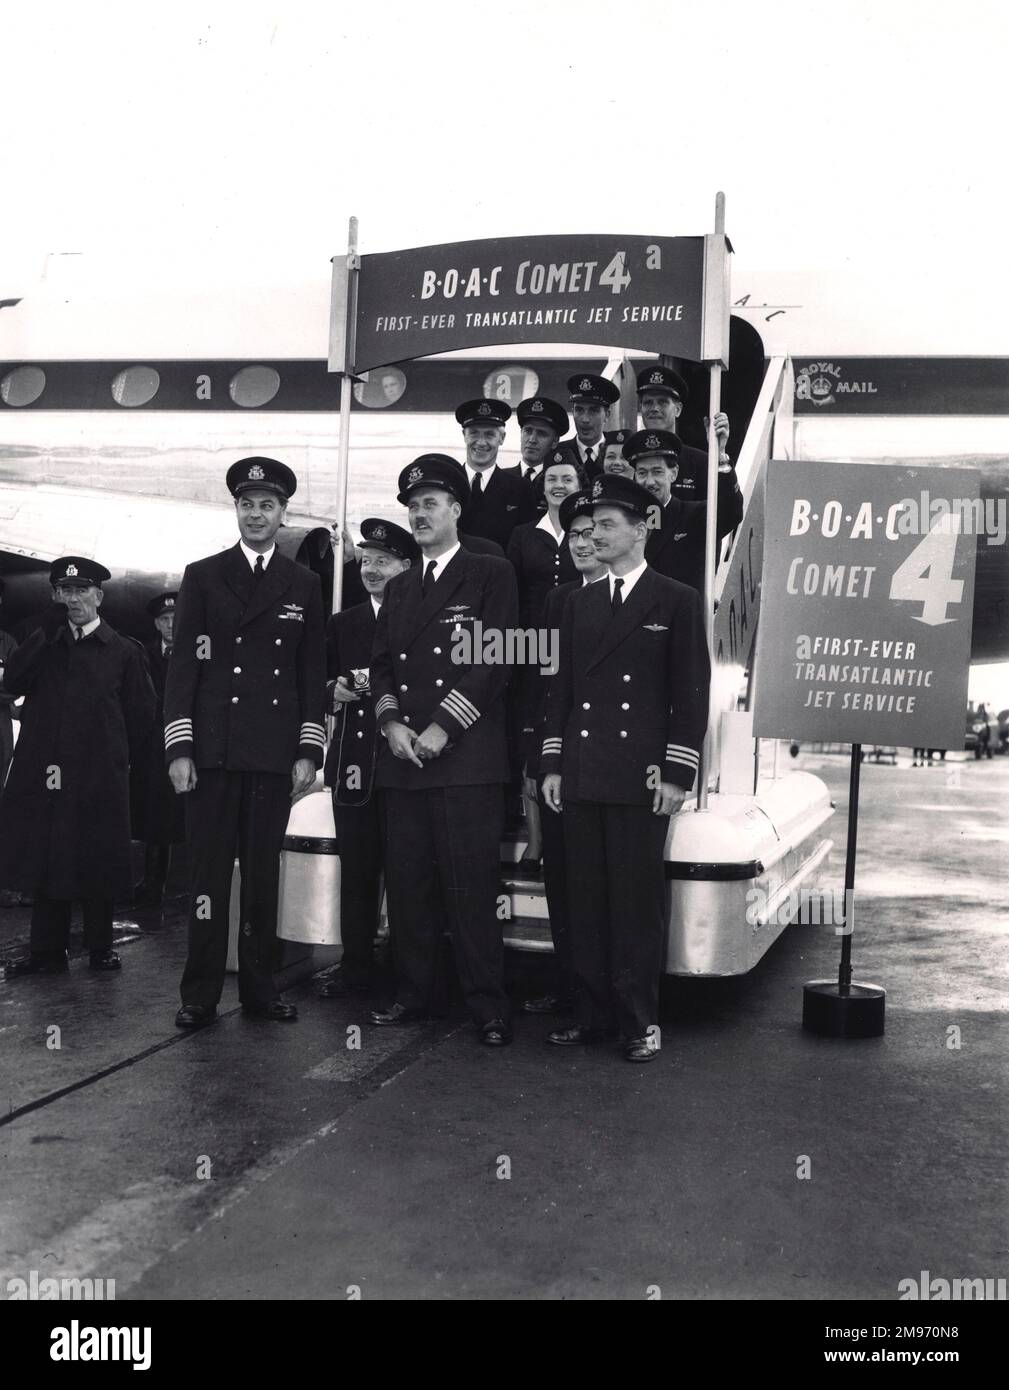 L'equipaggio del primo servizio Comet 4 (G-APDC) a New York il 4 ottobre 1958. CAPT J.B. Linton (prima fila estrema sinistra), Capt Roy Millichap (prima fila centrale) e Capt I.J. Monaco (fila anteriore destra). Inoltre: E/o Kingston (con telecamera), e/o F.T. Durkin, N/o D. Thompson, Stewardess T. Mullis, e/o L.W.R. MCLAREN, R/O DI MATTINA Ruthven, Steward E.A. Johnson, Steward I.N. Flanagan e Steward R.L. Dunkley. Foto Stock